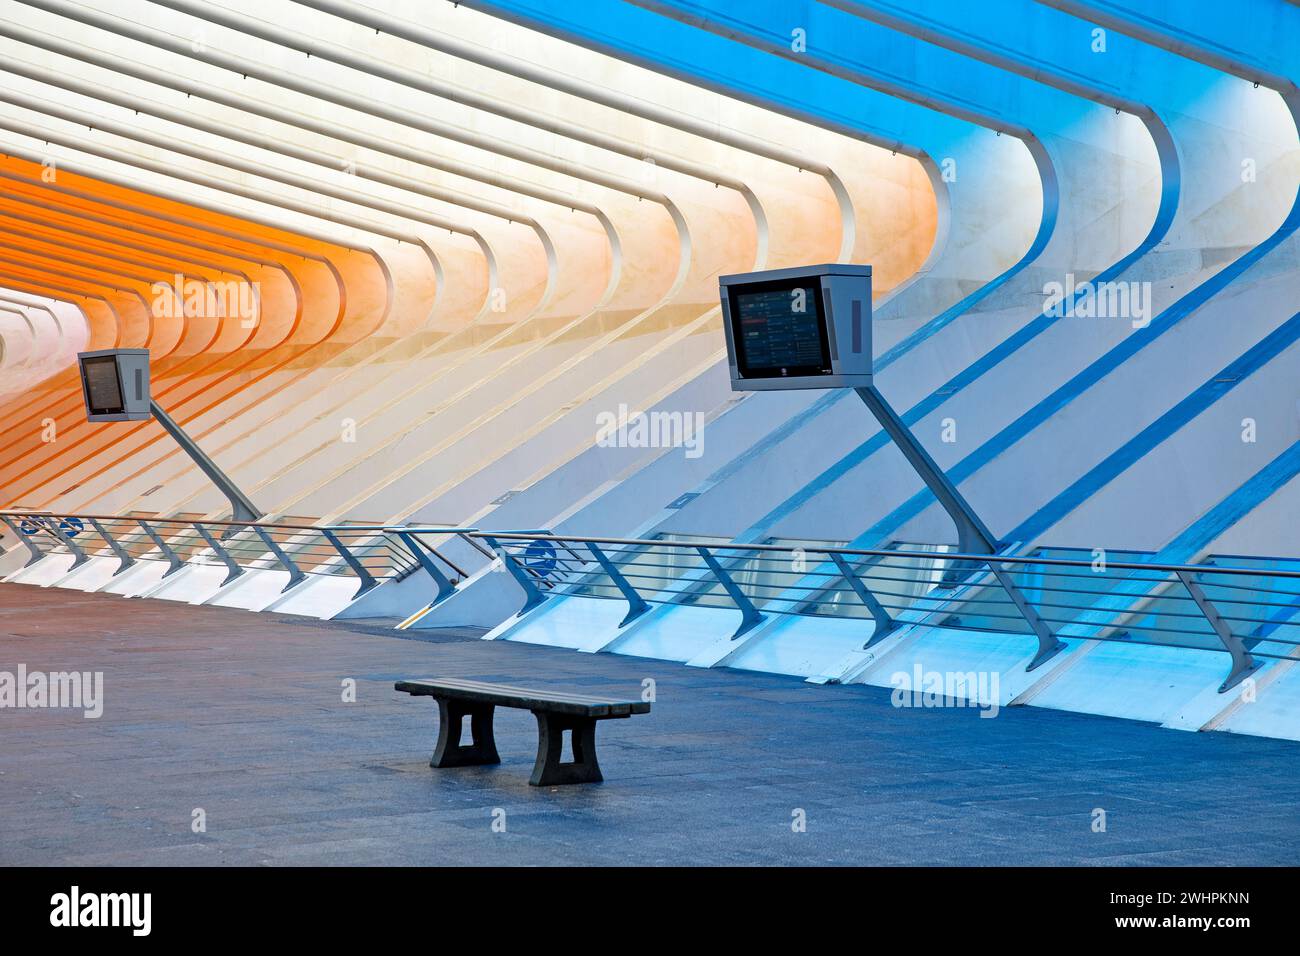 Bahnhof LiÃ¨ge-Guillemins mit Installation von Daniel Buren, LiÃ¨ge, Belgien, Europa Stockfoto